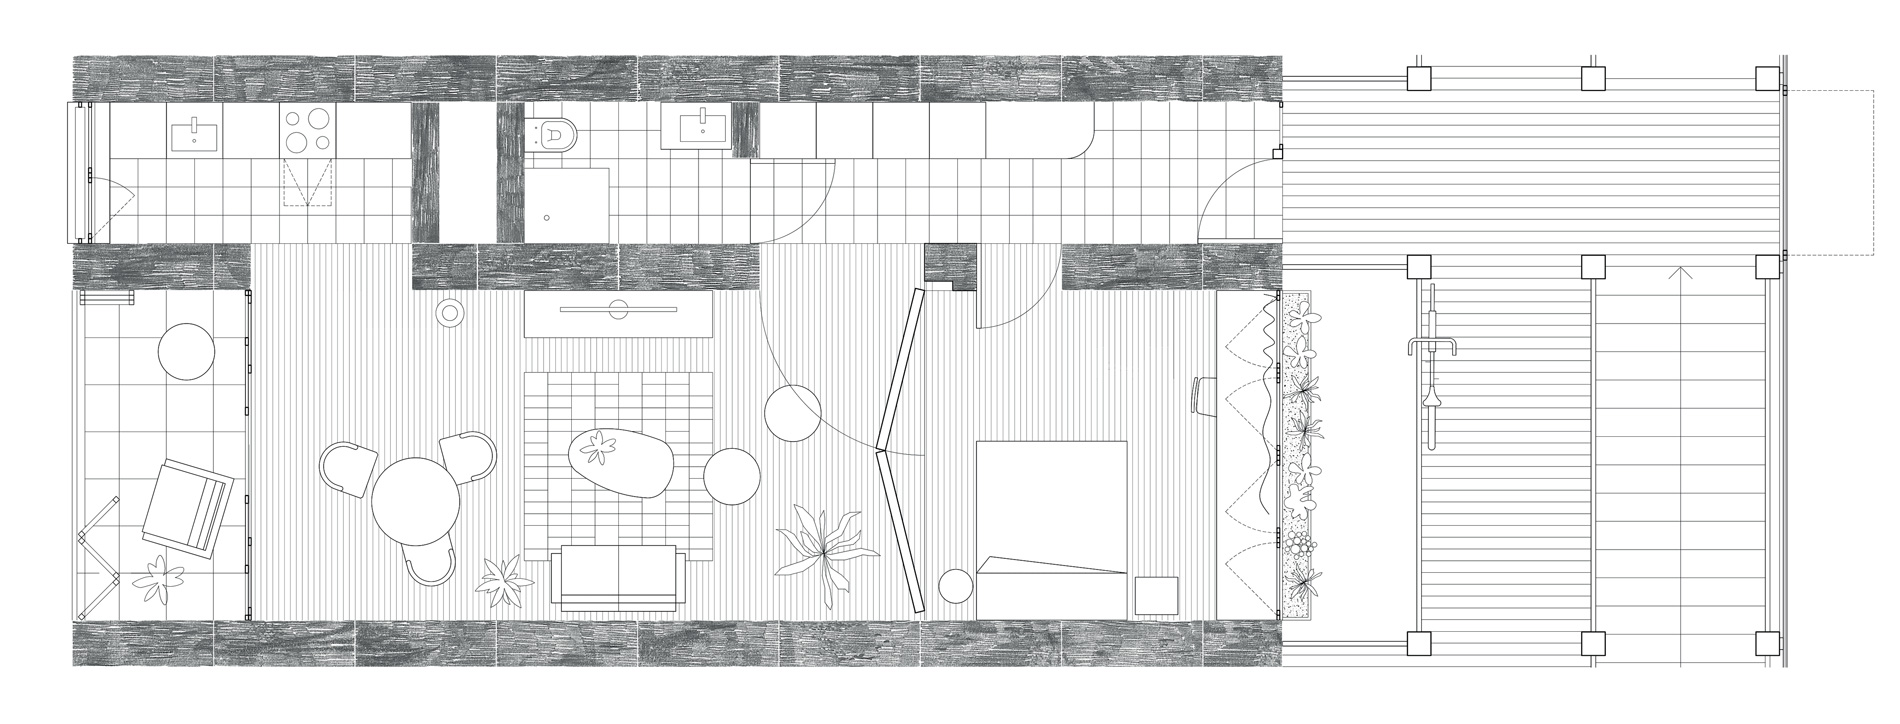 Plan typologique du projet logement entre Coudekerque Branche et Téteghem